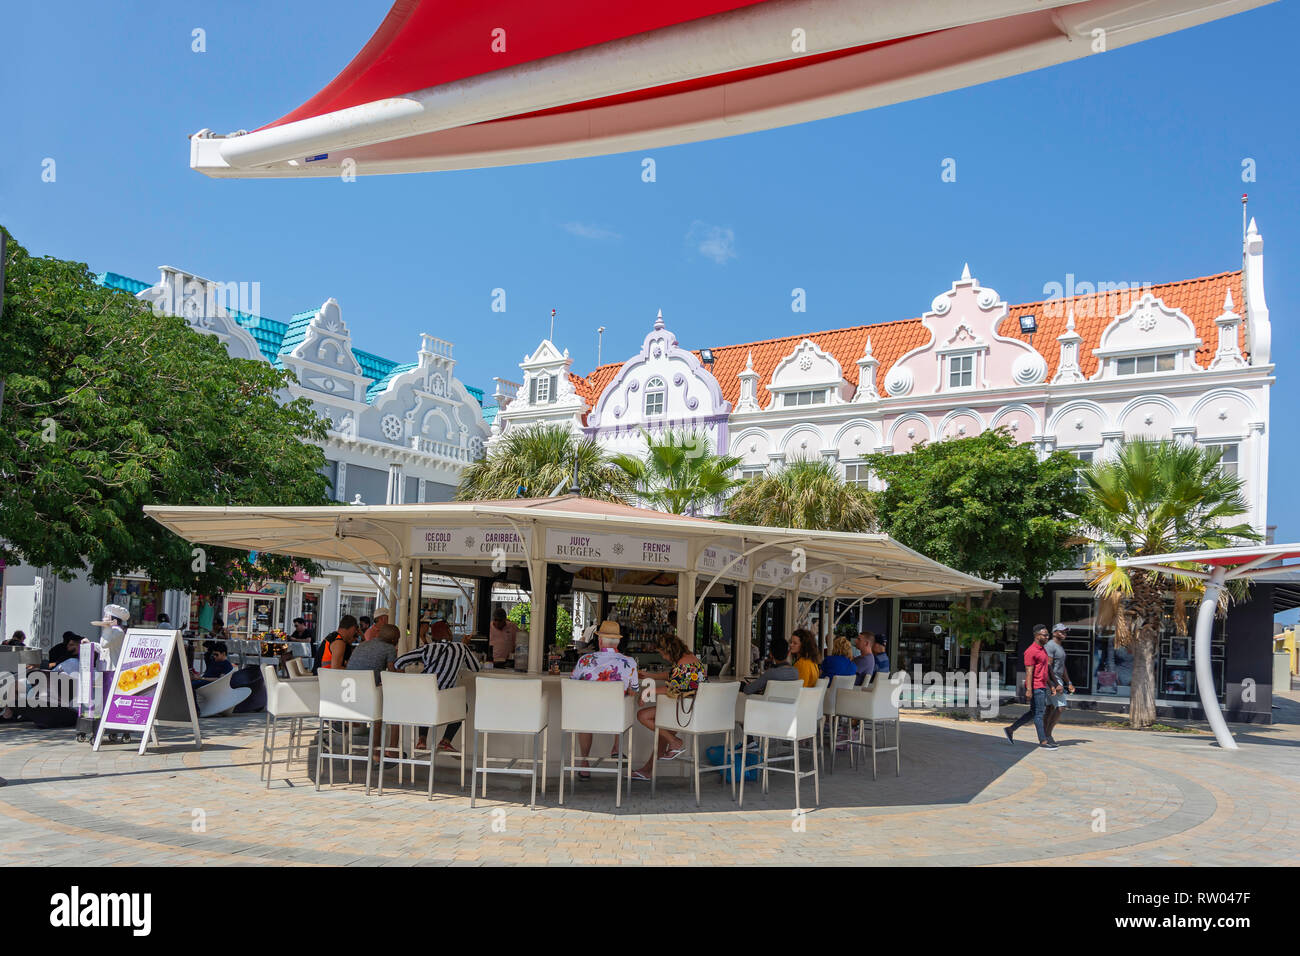 Plaza Daniel Leo mostra ristorante e olandese di edifici in stile coloniale, Oranjestad, Aruba, Isole ABC, Leeward Antilles, dei Caraibi Foto Stock